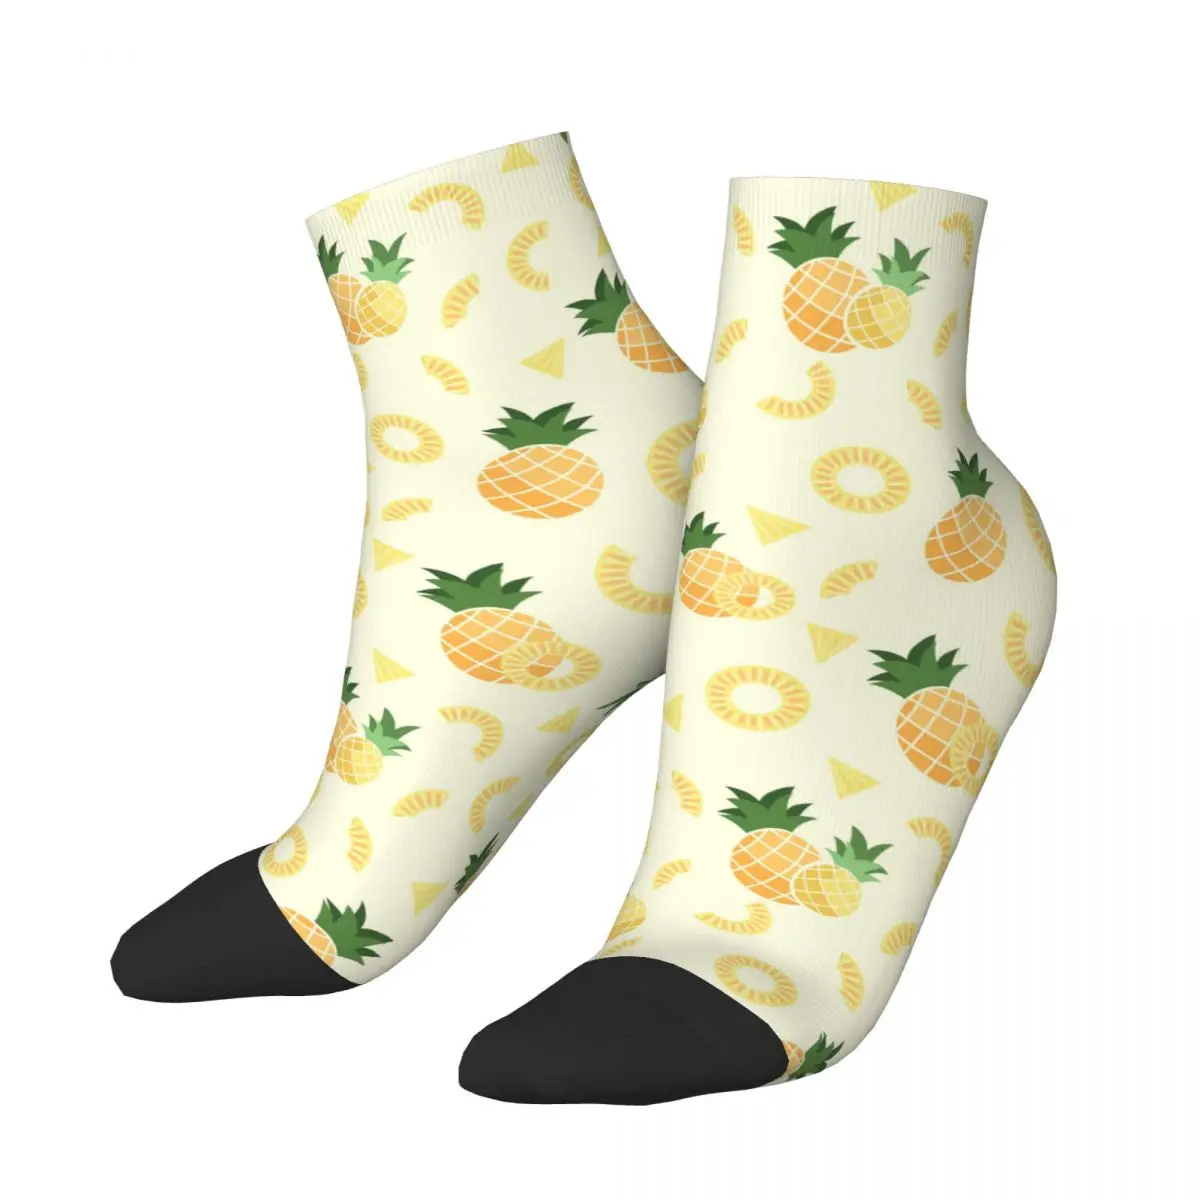 

Сумасшедший Дизайн Милые Желтые Носки с рисунком ананаса для футбола из полиэстера короткие носки для женщин и мужчин поглощающие пот